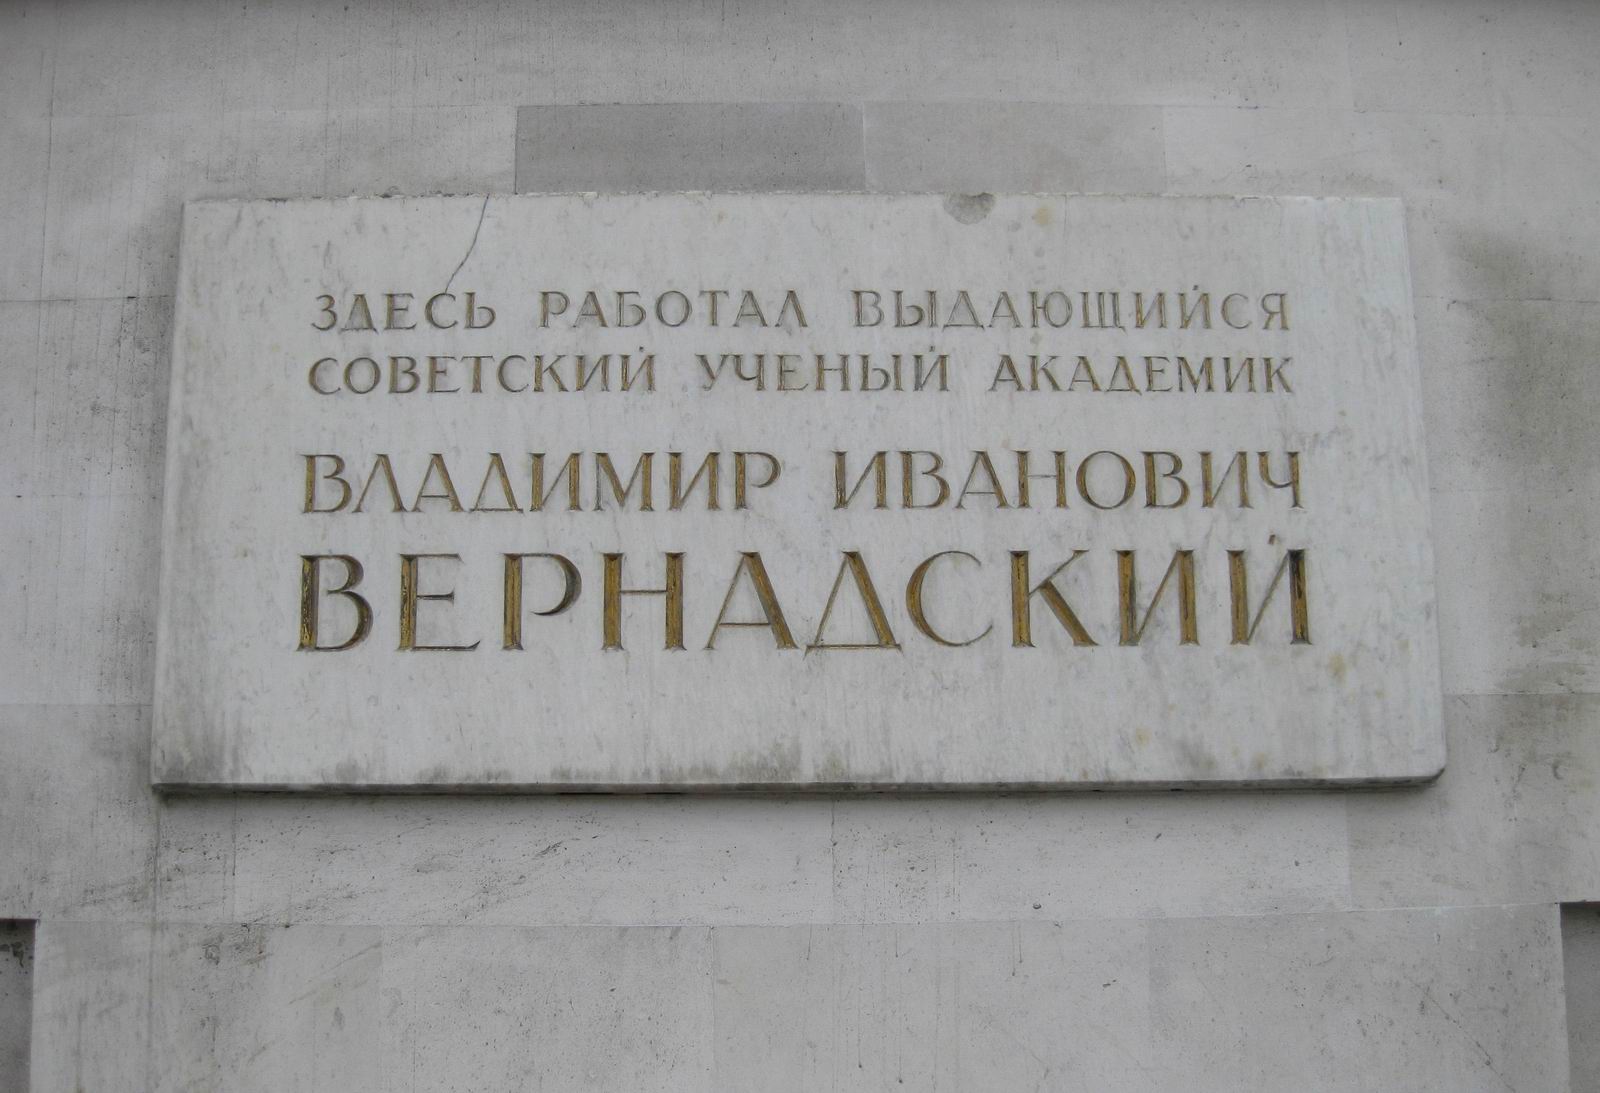 Мемориальная доска Вернадскому В.И. (1863–1945), арх. Л.П.Шатилова, на Моховой улице, дом 11.